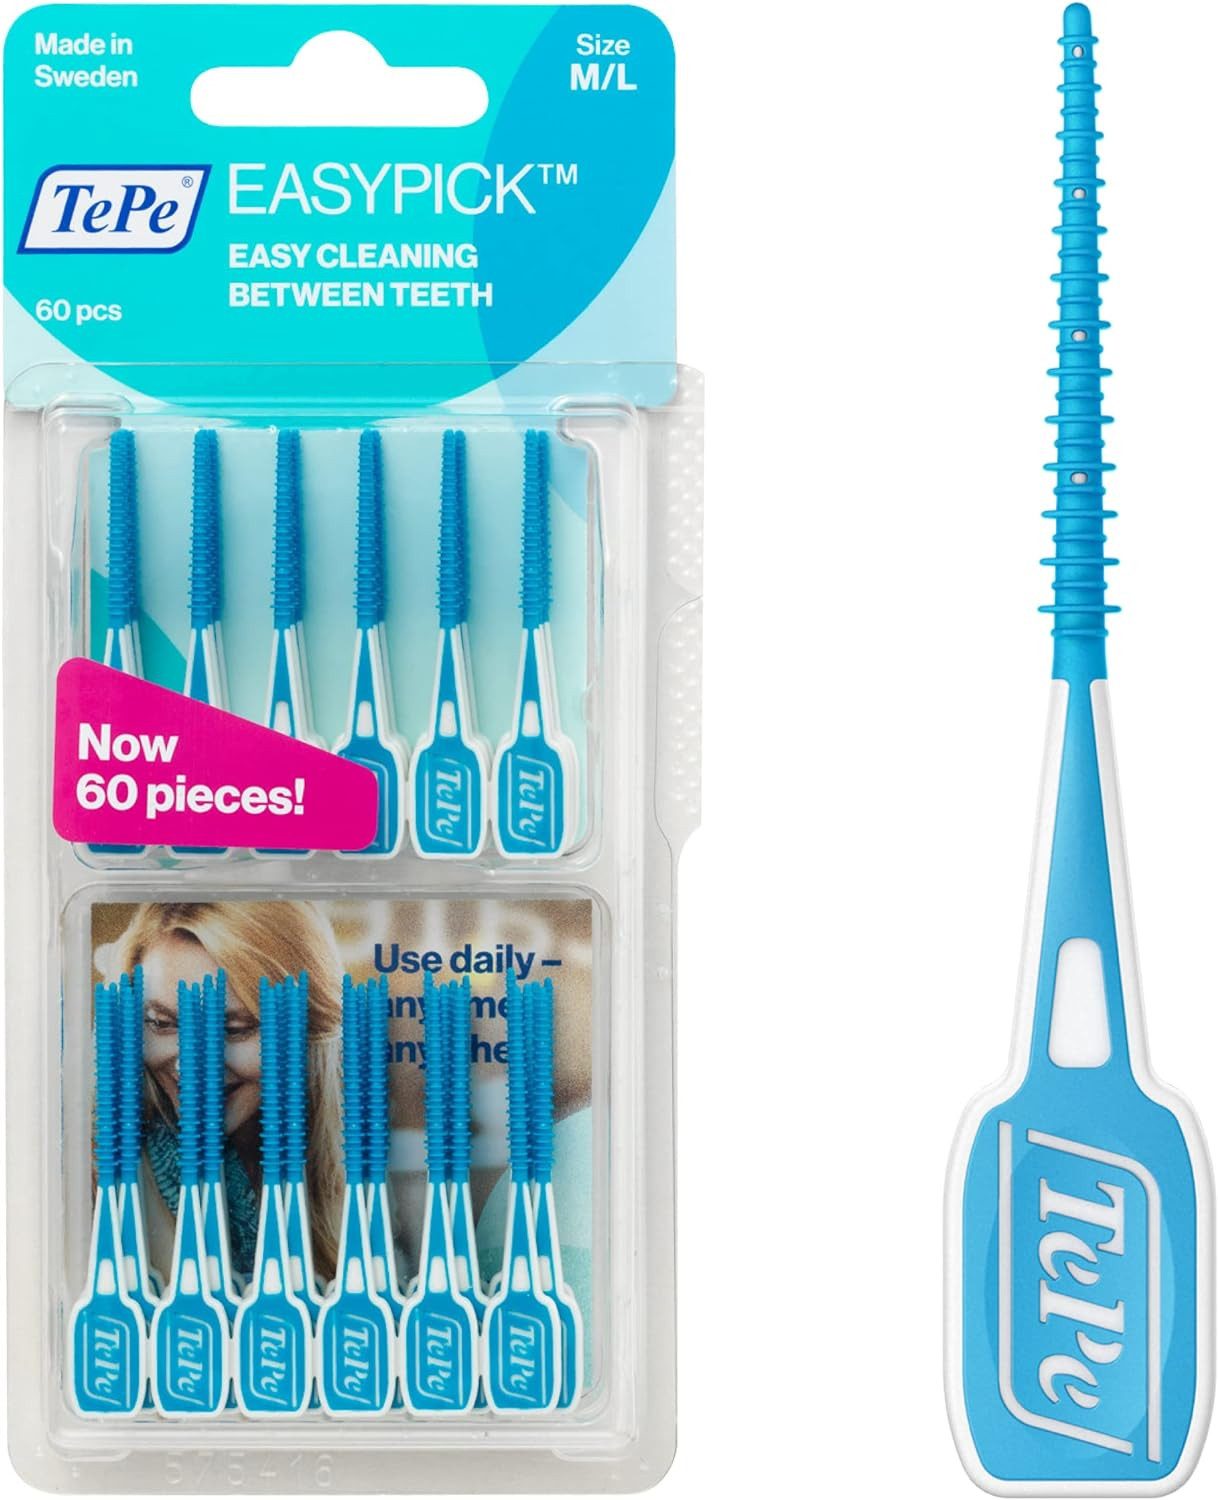 TePe Interdentalbürsten EasyPick Dental Stick, 120 Stück (Doppelpack 2x 60 Stück), Effektive Interdentalreinigung, Sanfte Zahnpflege in Größe M/L